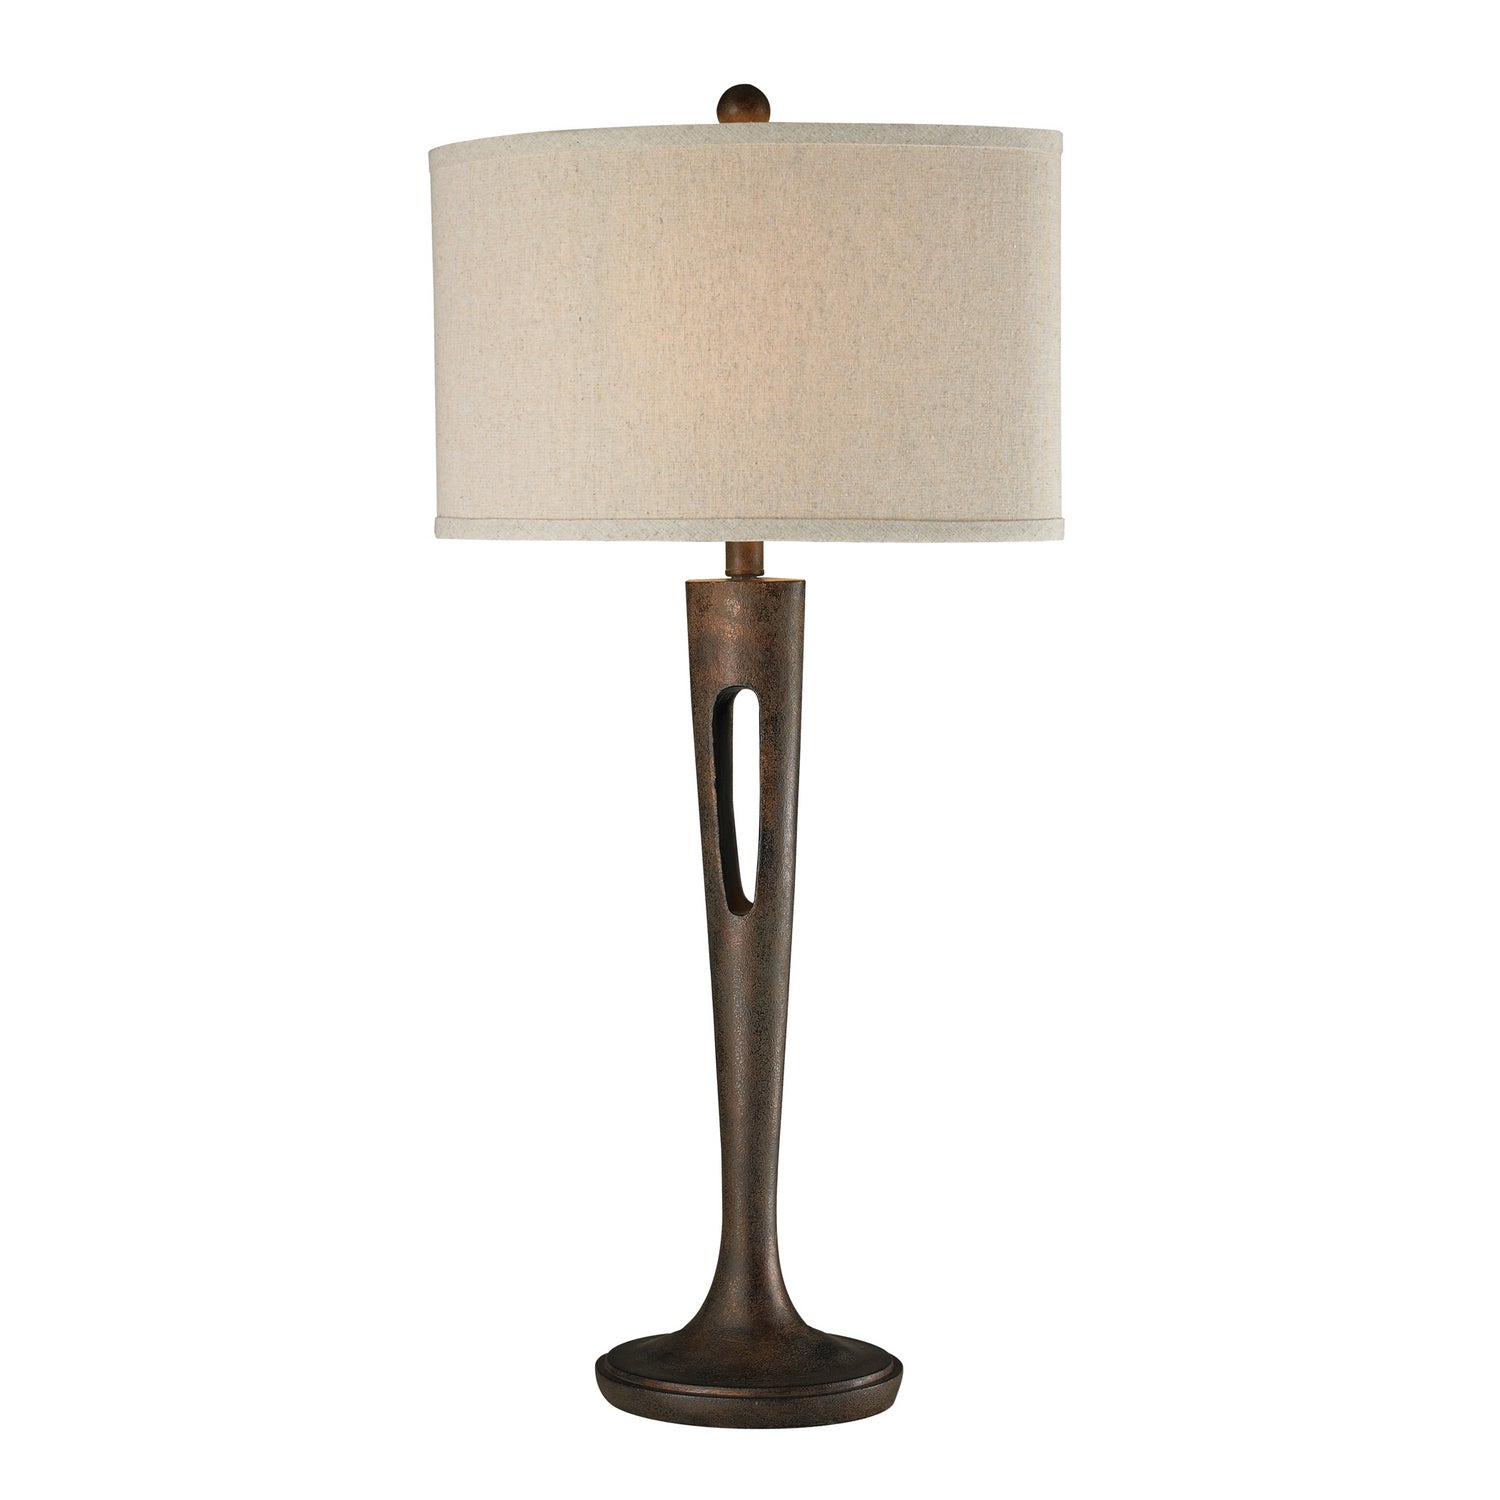 ELK Home - D2426 - One Light Table Lamp - Martcliff - Burnished Bronze